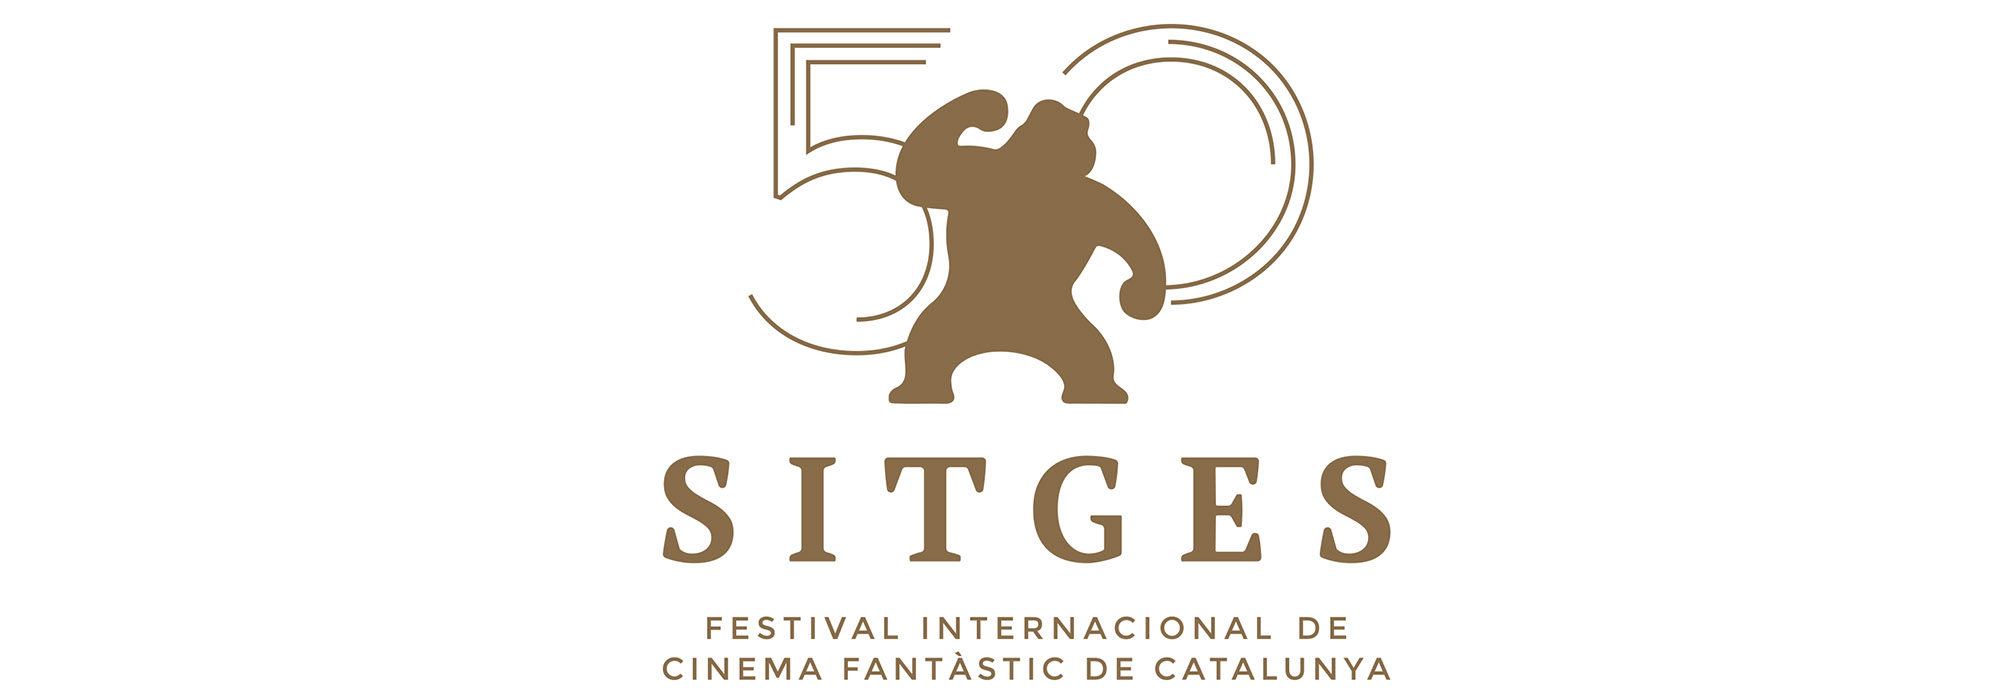 255 largometrajes podremos ver en Sitges 2017